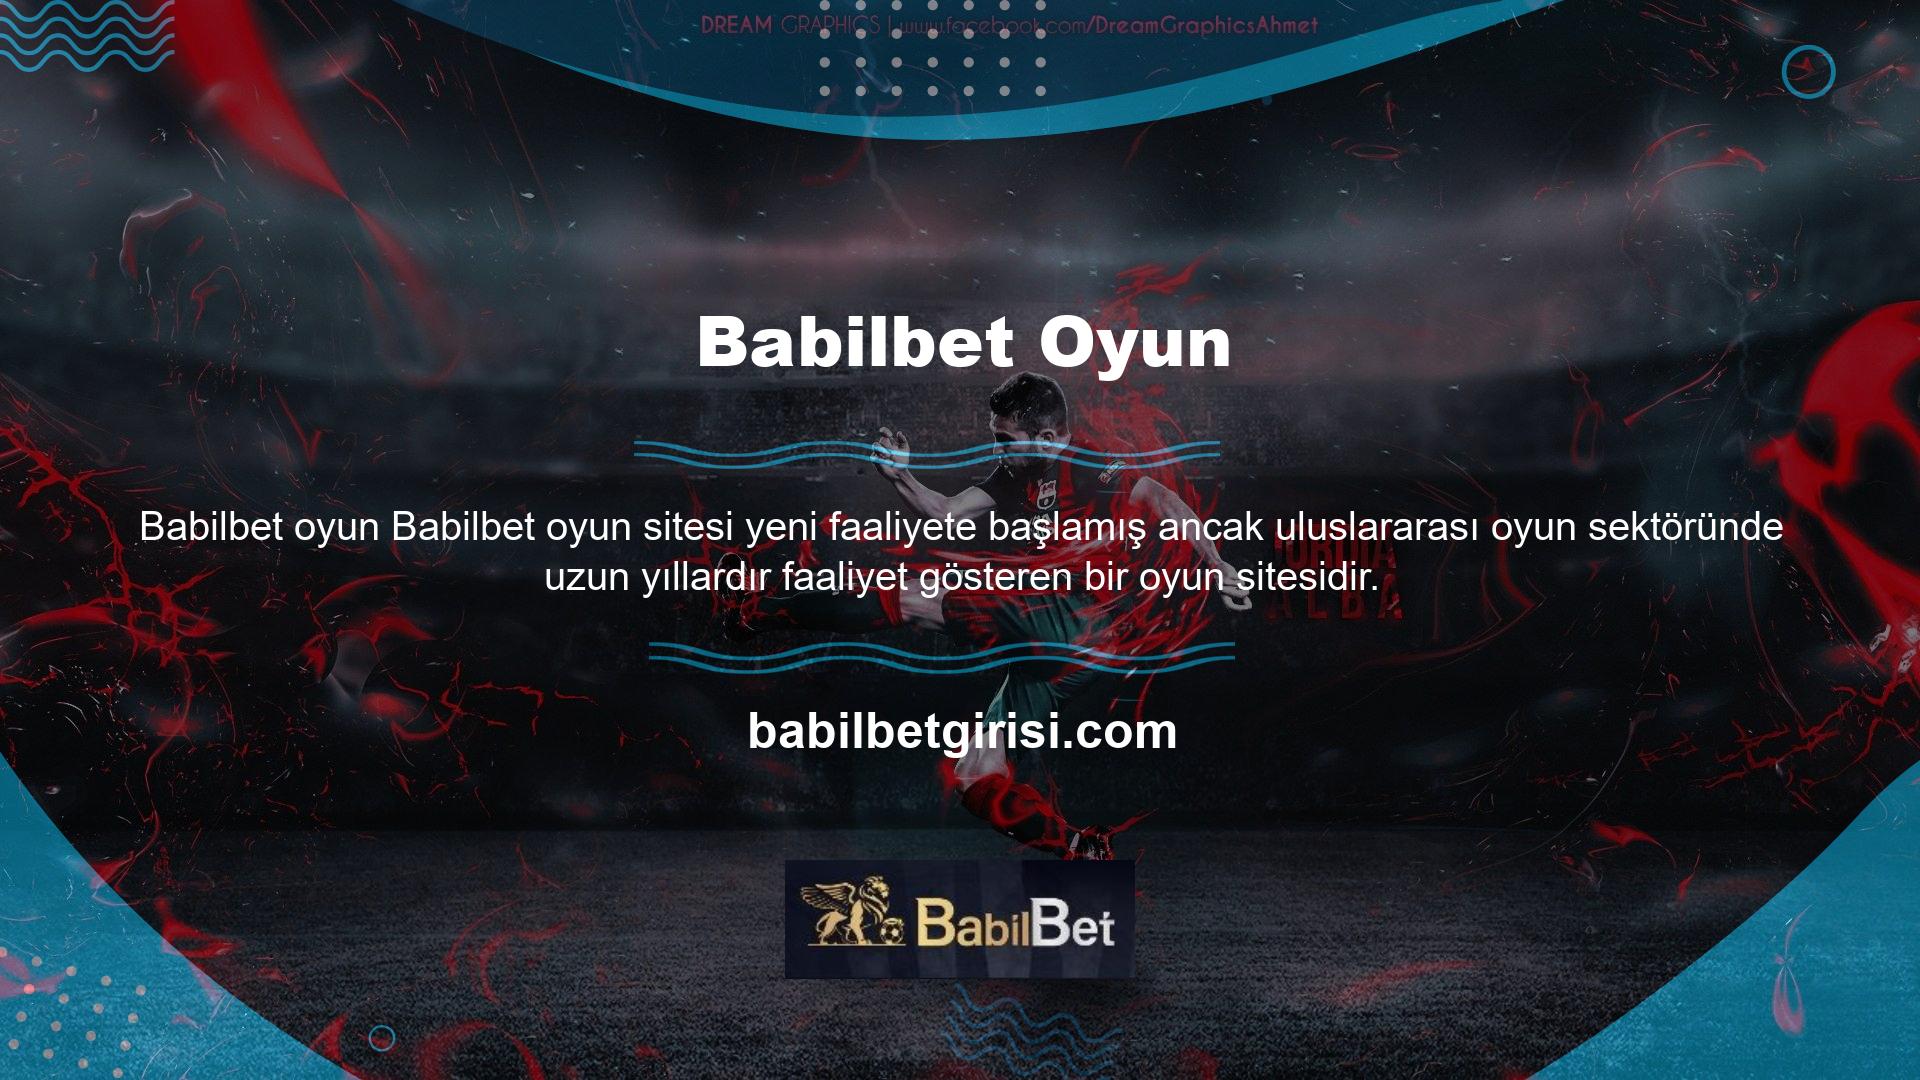 Ünlü oyun sitesi Babilbet, üyelerine güvenilirliği kanıtlanmış casino sitelerinde hem ülkemizde hem de dünyada casino oynama fırsatı sunmaktadır